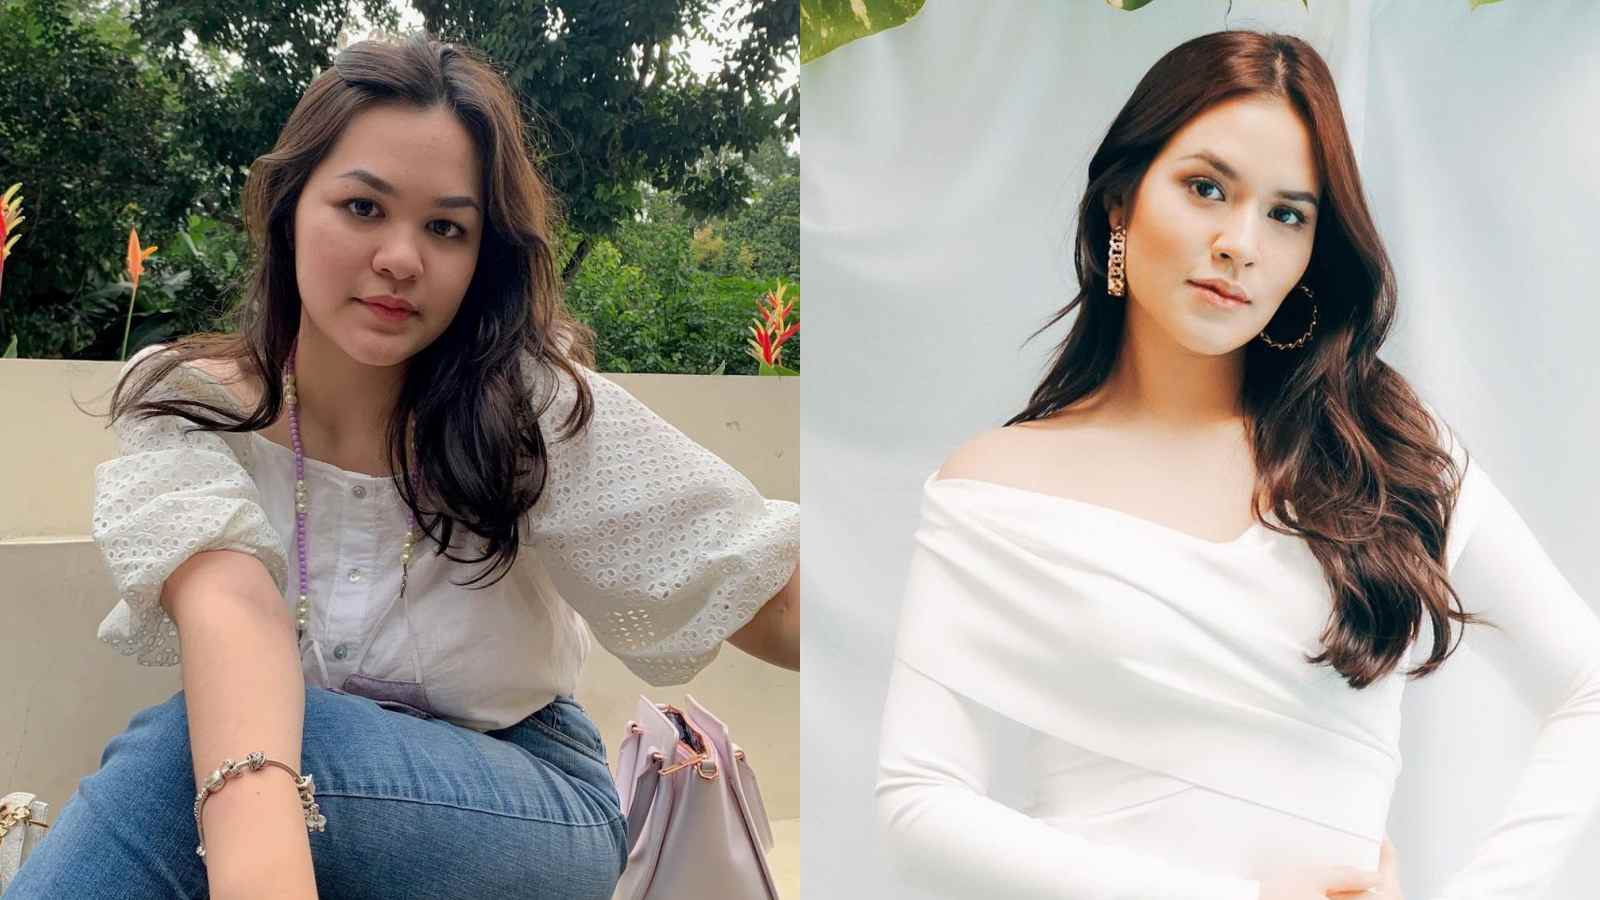 Biodata Jourimanzky Putri Lengkap Agama dan Umur, Alumni Indonesian Idol 2018 yang Parasnya Mirip Raisa Gaes!